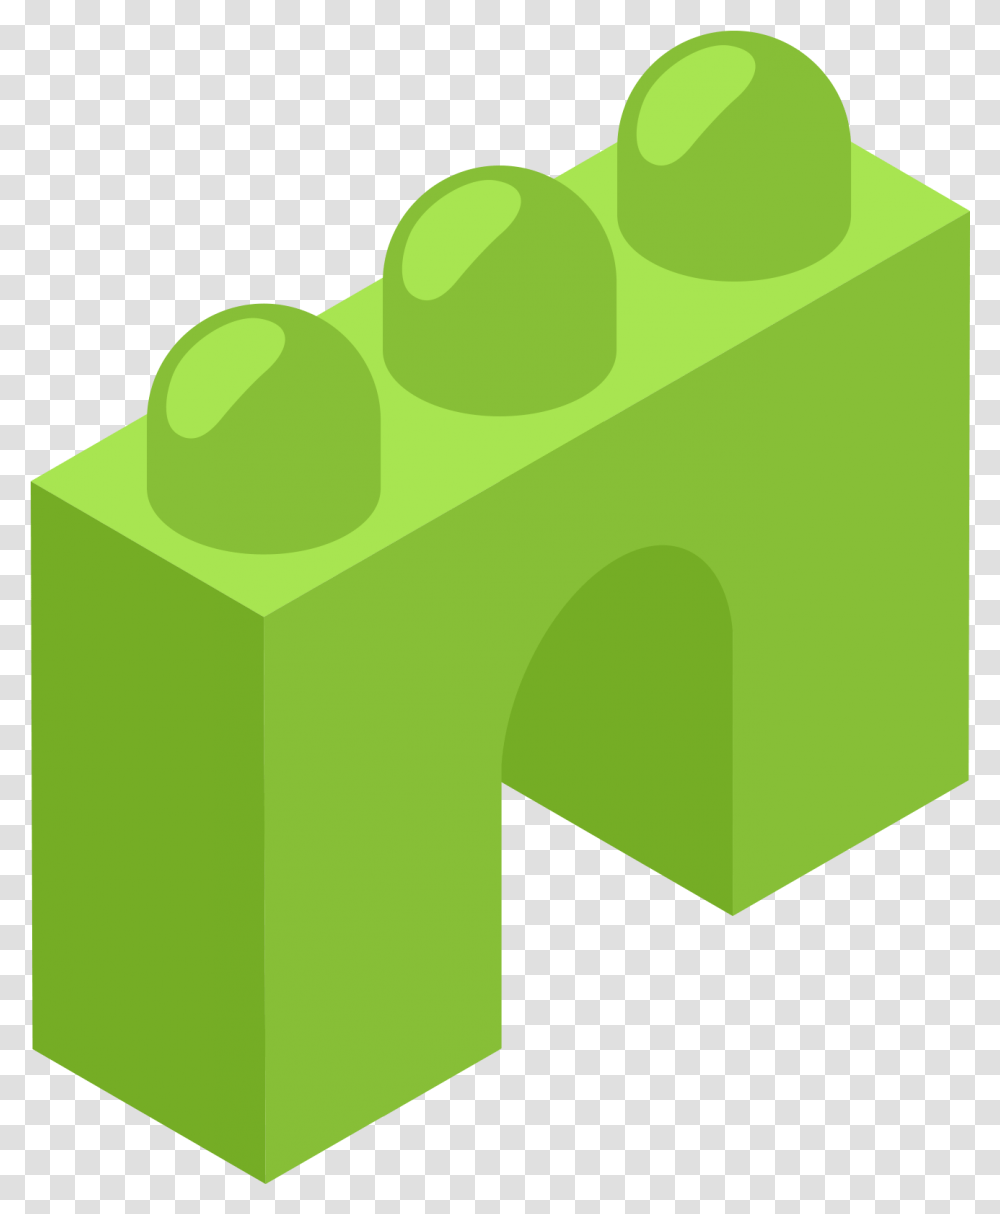 Green Toy Block Illustration, Cylinder, Paper Transparent Png